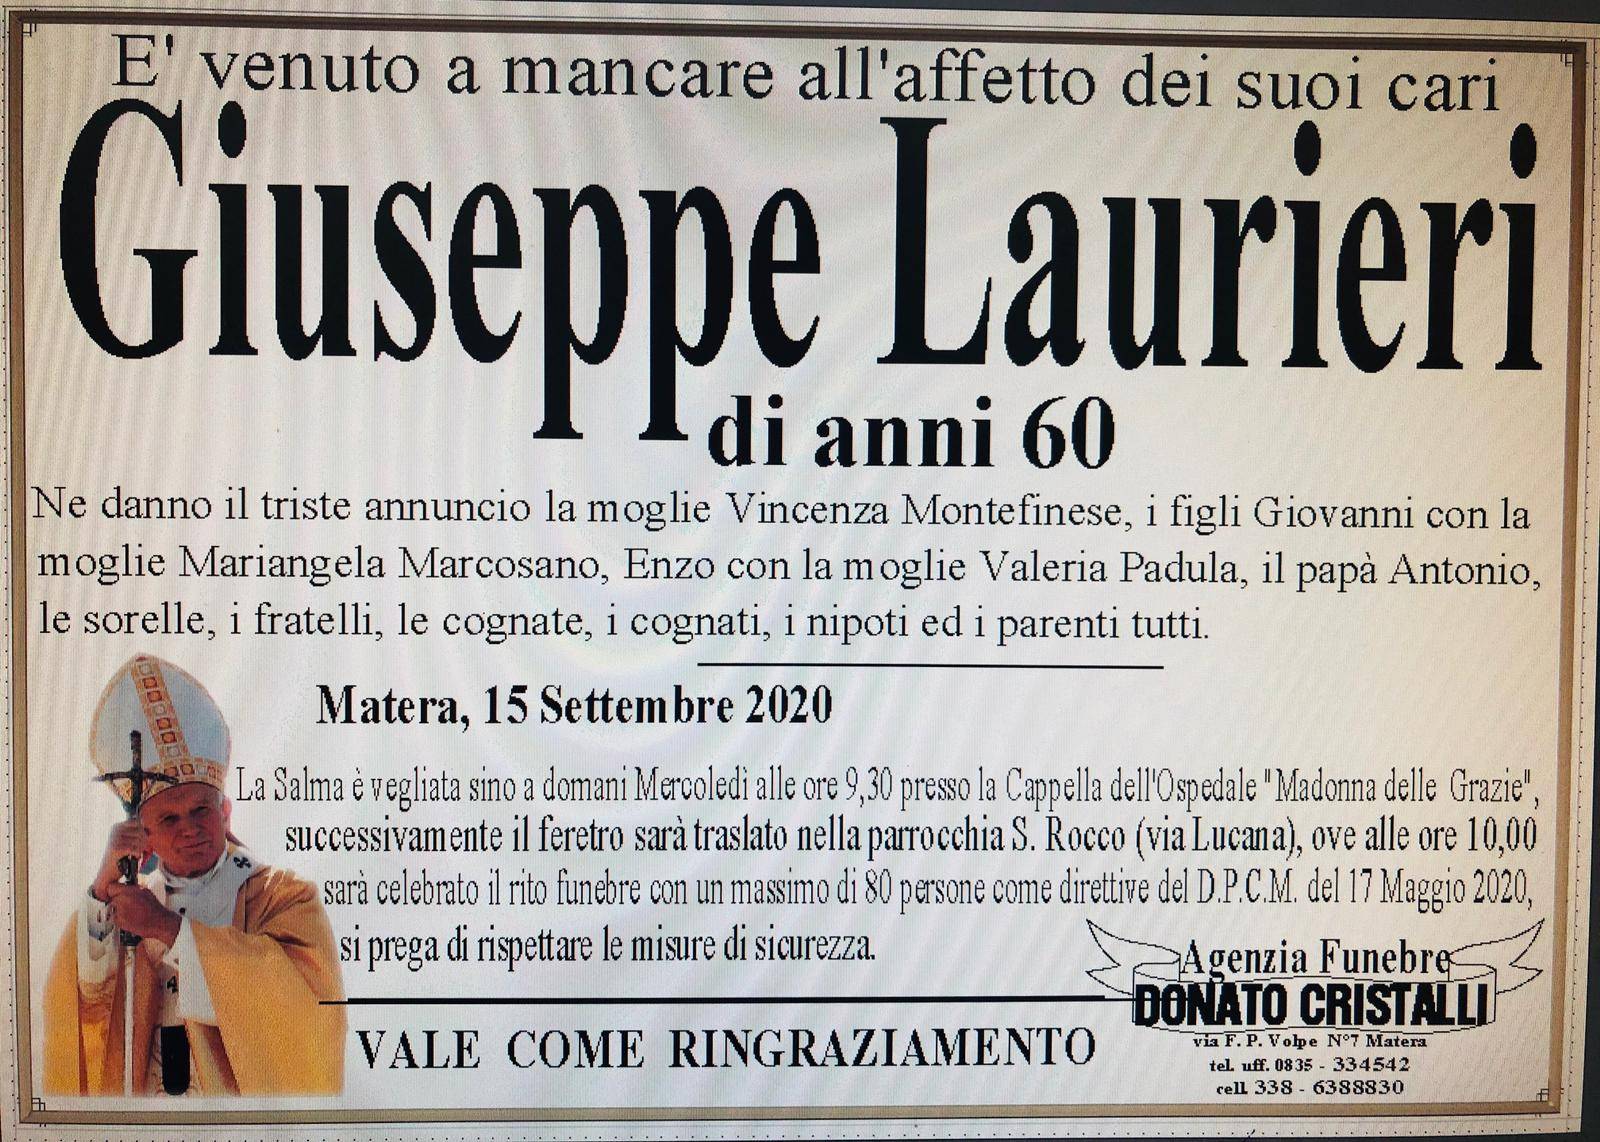 Giuseppe Laurieri